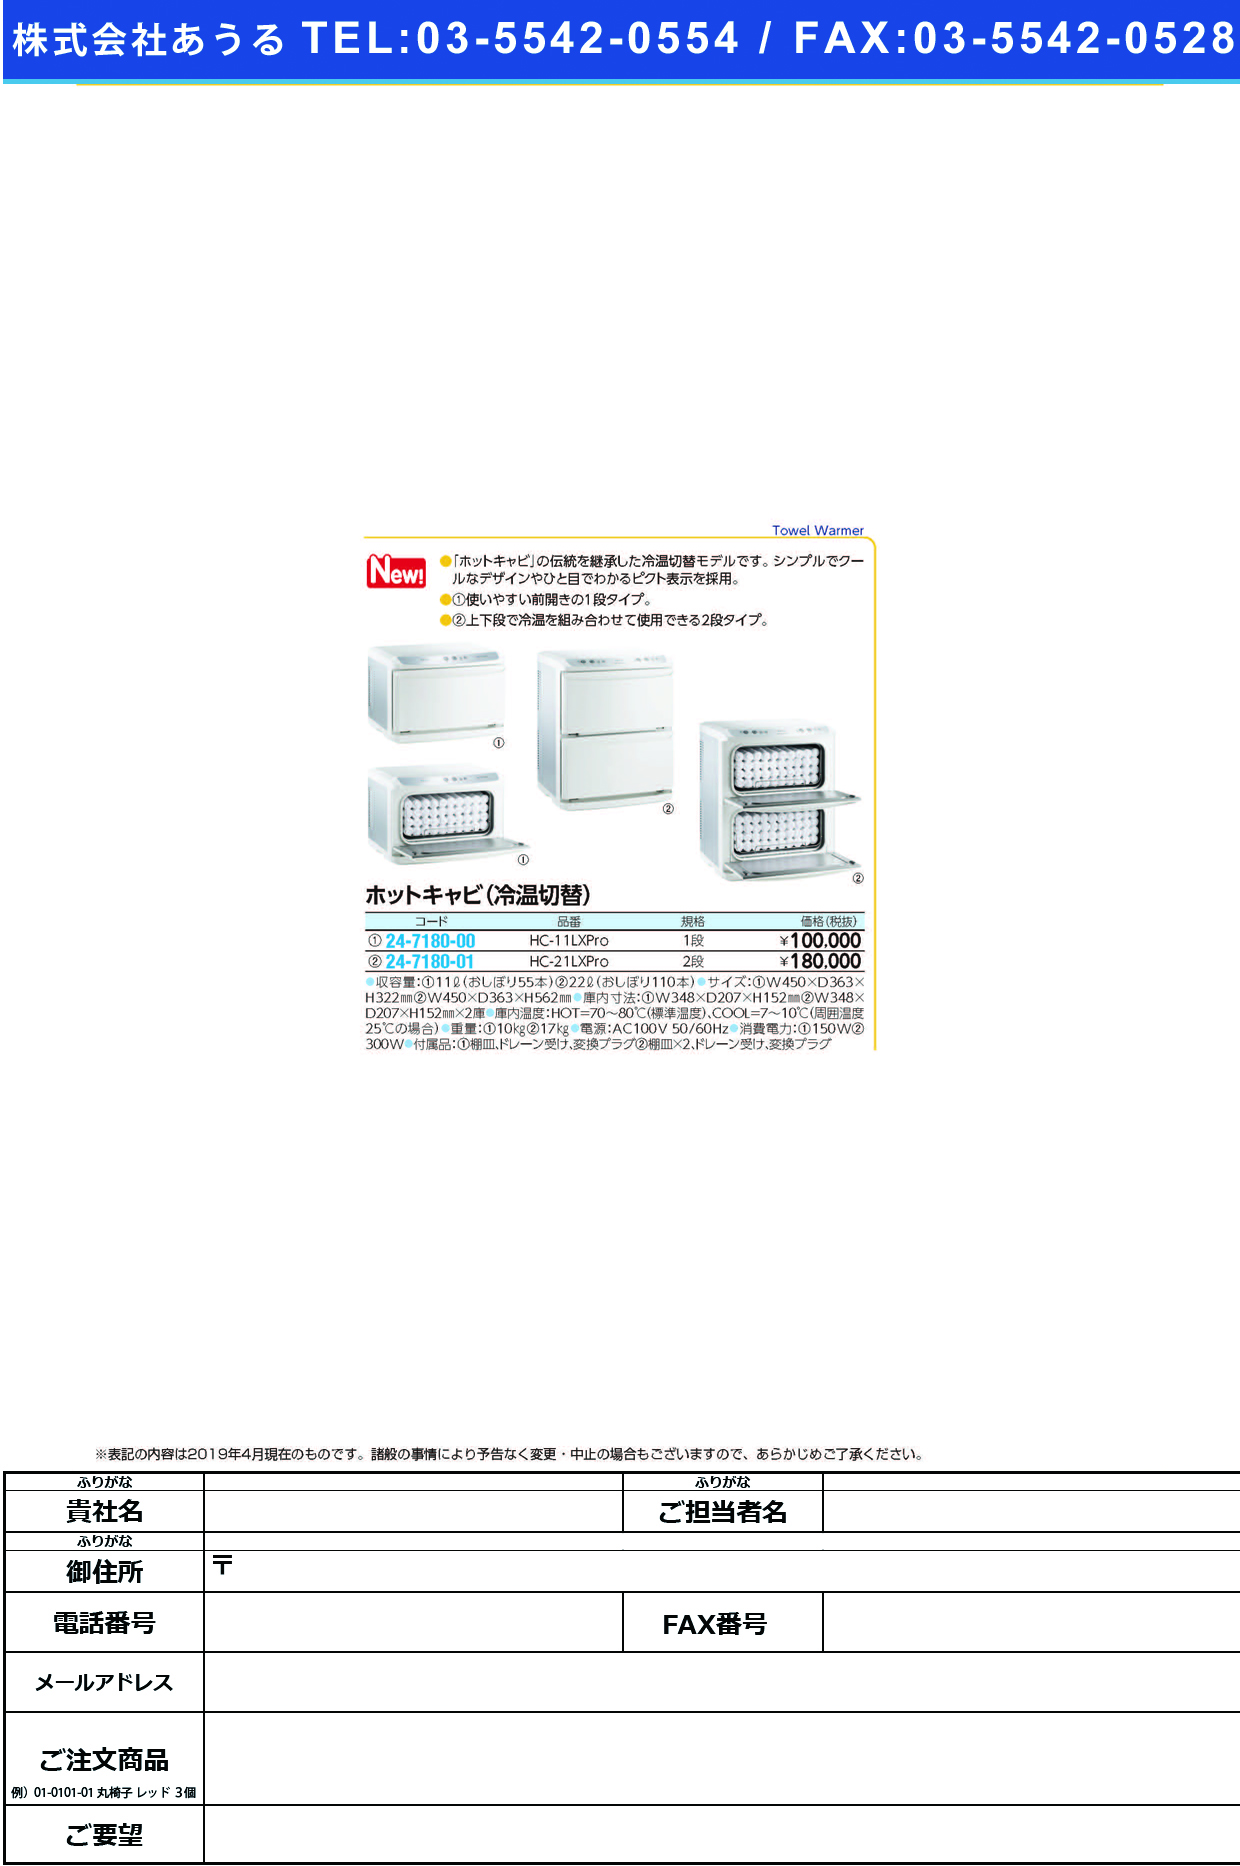 (24-7180-01)ホットキャビ（冷温切替モデル）HC-21LXPRO ﾎｯﾄｷｬﾋﾞ(ﾚｲｵﾝｷﾘｶｴﾓﾃﾞﾙ(タイジ)【1台単位】【2019年カタログ商品】